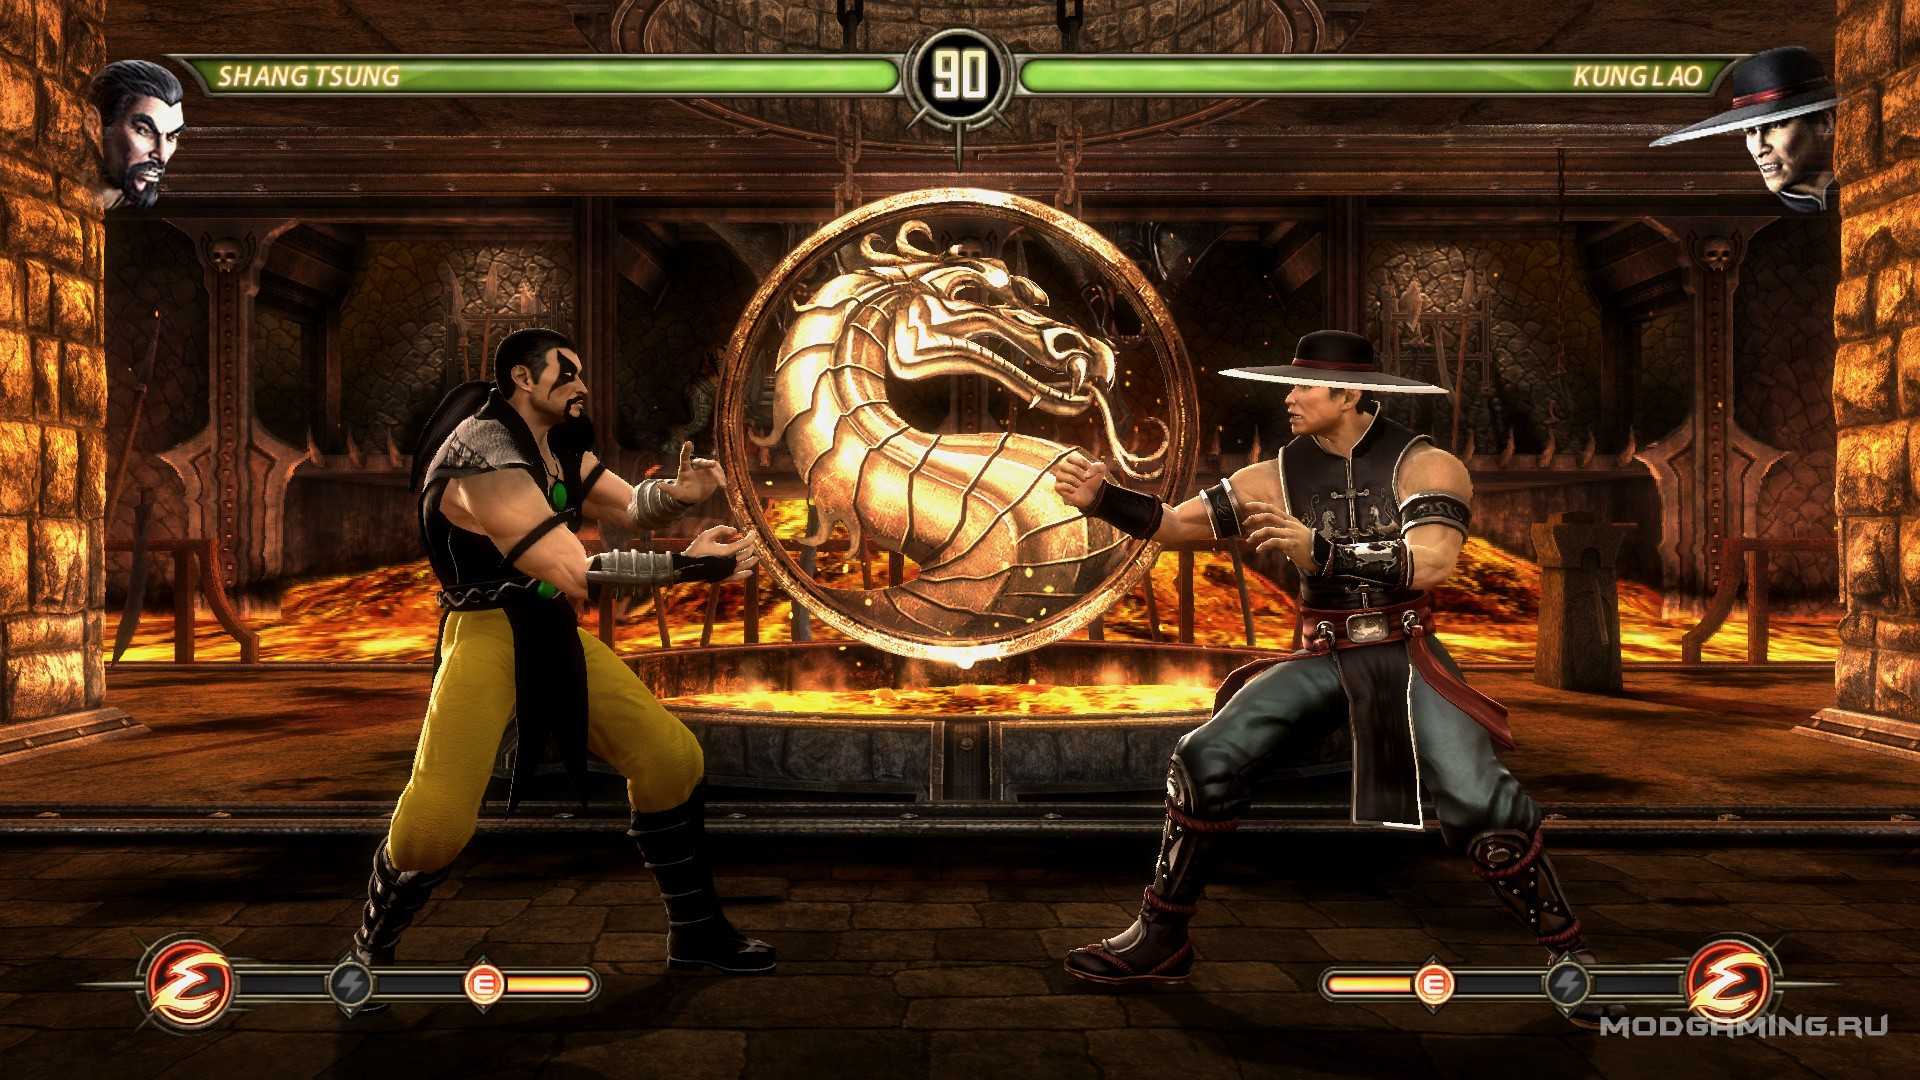 Мортал комбат играть с другом. Шанг Цунг мортал комбат 3. Игра мортал комбат игра мортал комбат. Mortal Mortal Kombat 3 Shang Tsung. Mortal Kombat 2002.